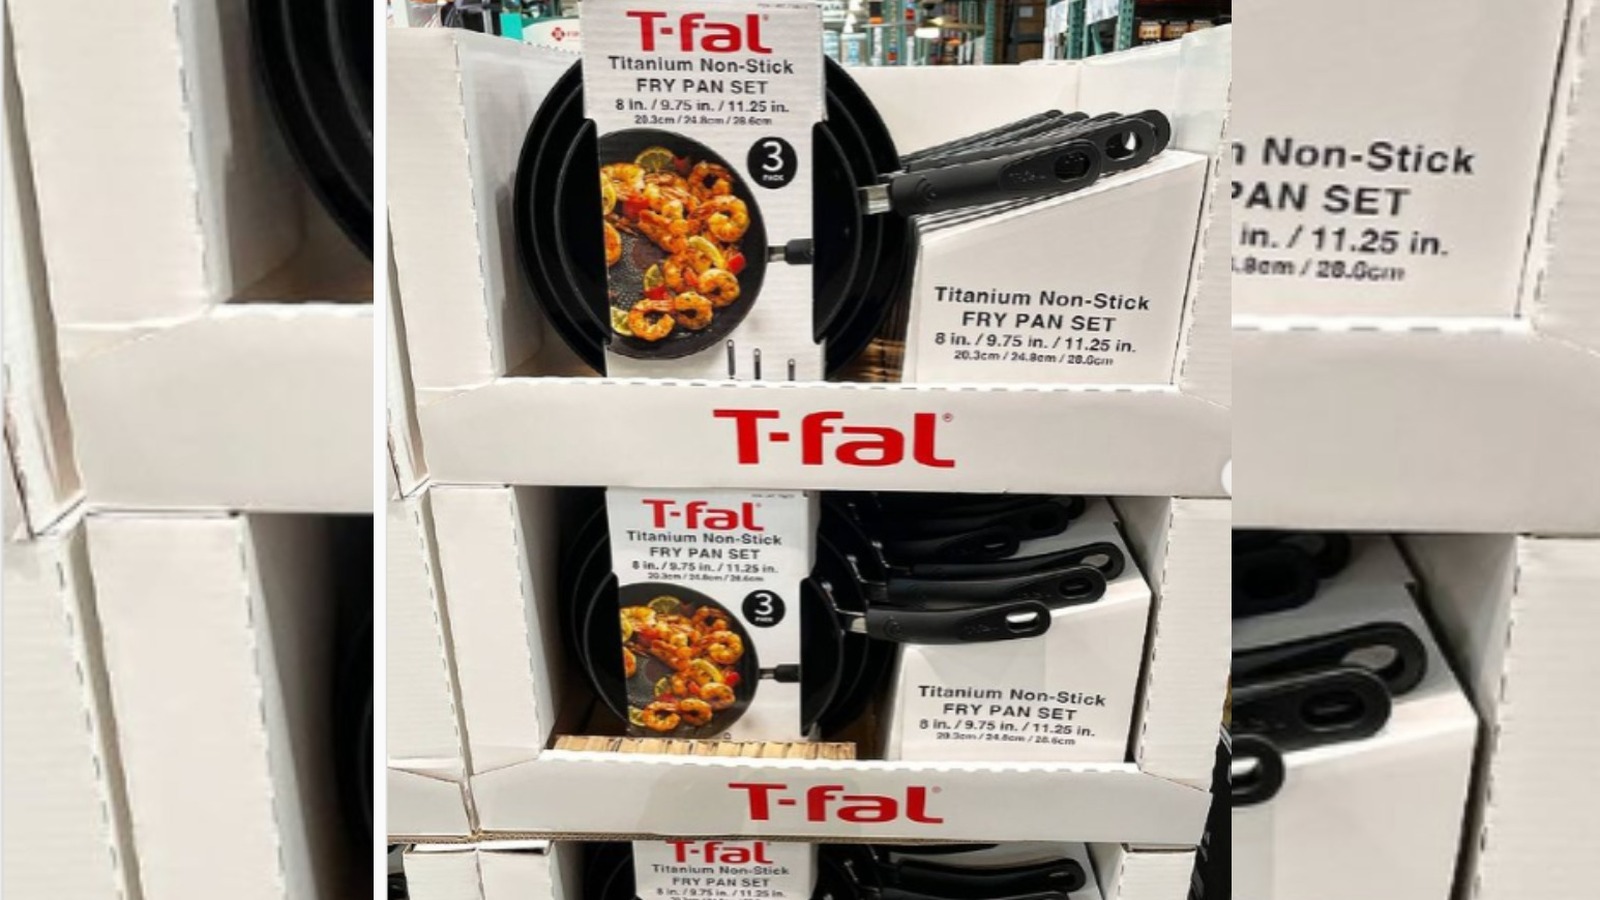 T-fal Non-Stick 3-piece Fry Pan Set